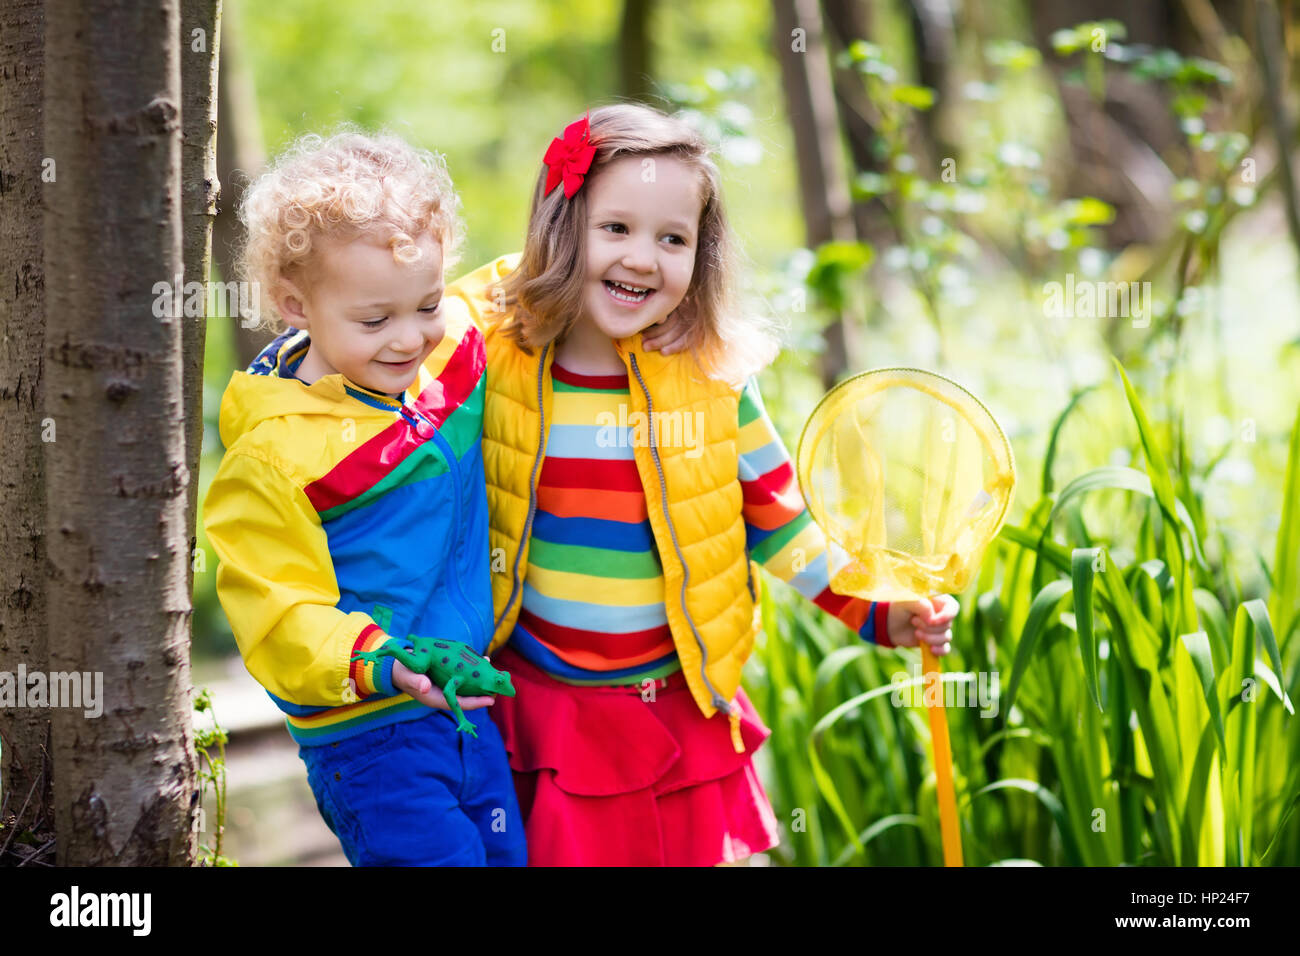 Kinder spielen im Freien. Kindergarten Kinder fangen Frosch mit Net. Jungen und Mädchen im Wald Fluss angeln. Abenteuer Kindergarten Tagesausflug in wilden natu Stockfoto